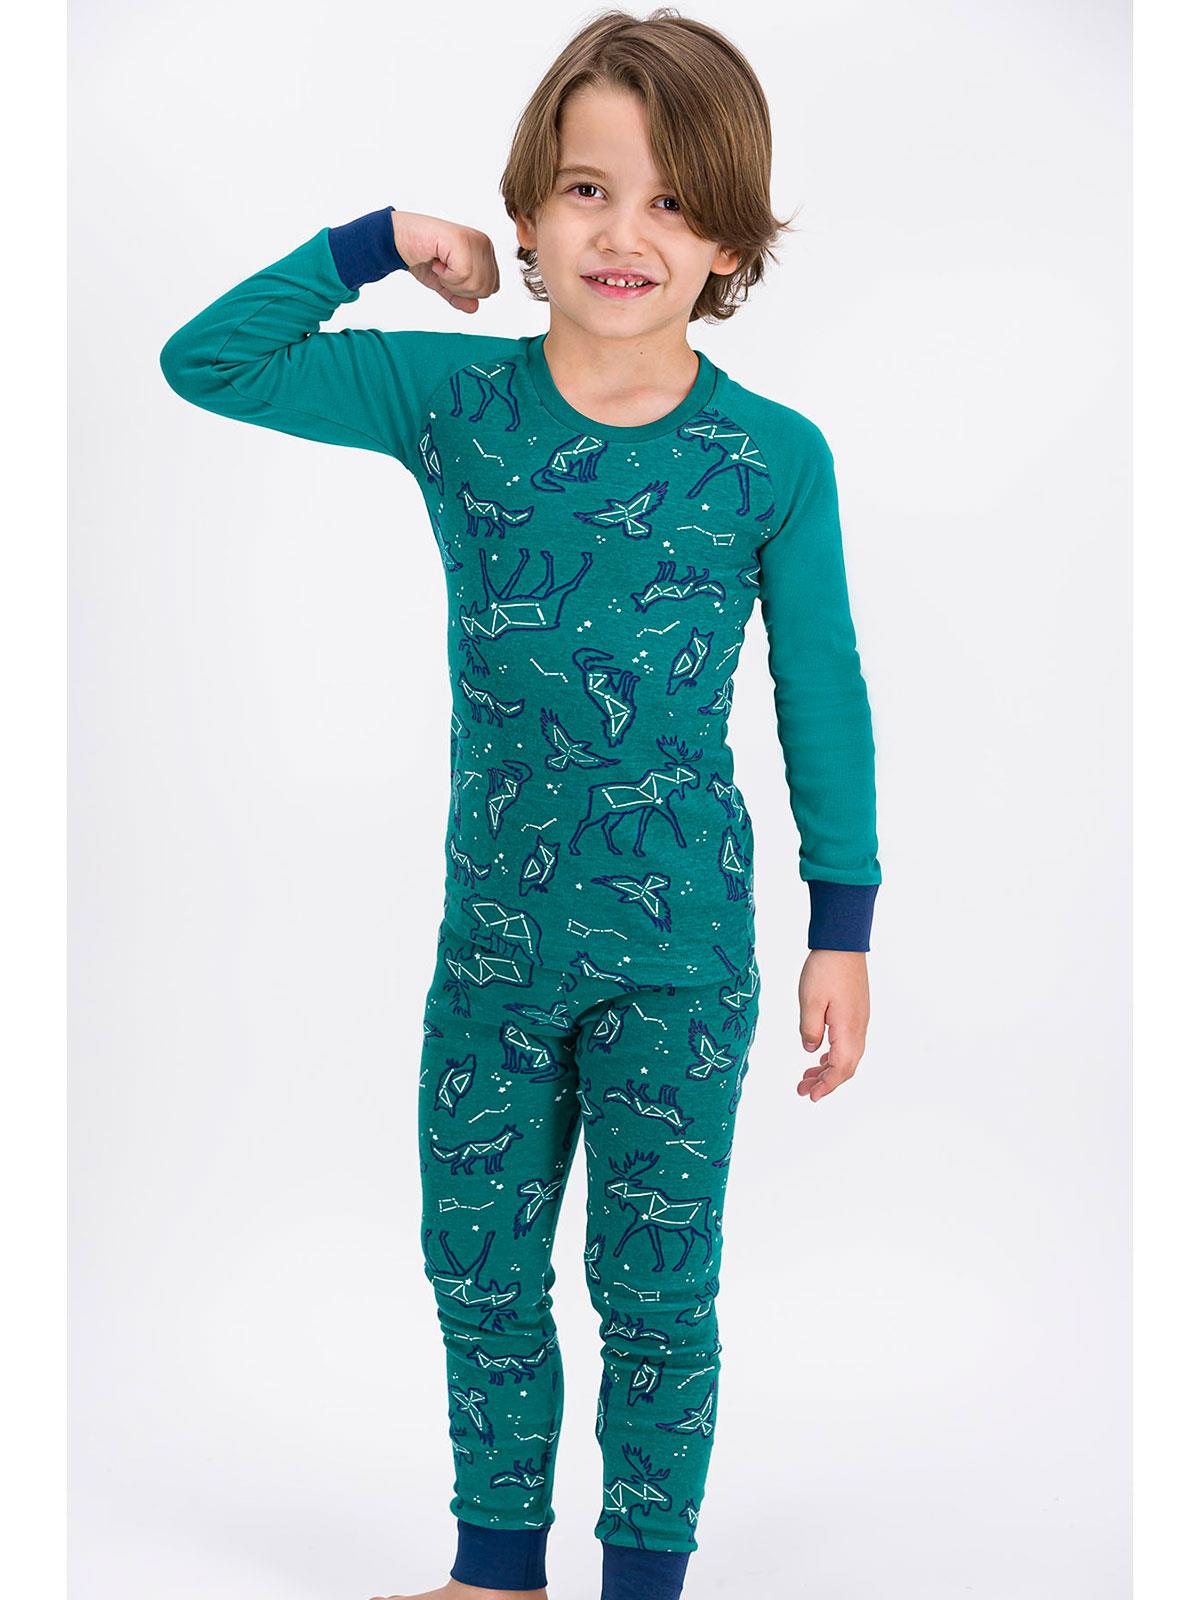 Roly Poly Erkek Çocuk Pijama Takımı 2-7 Yaş Yeşil